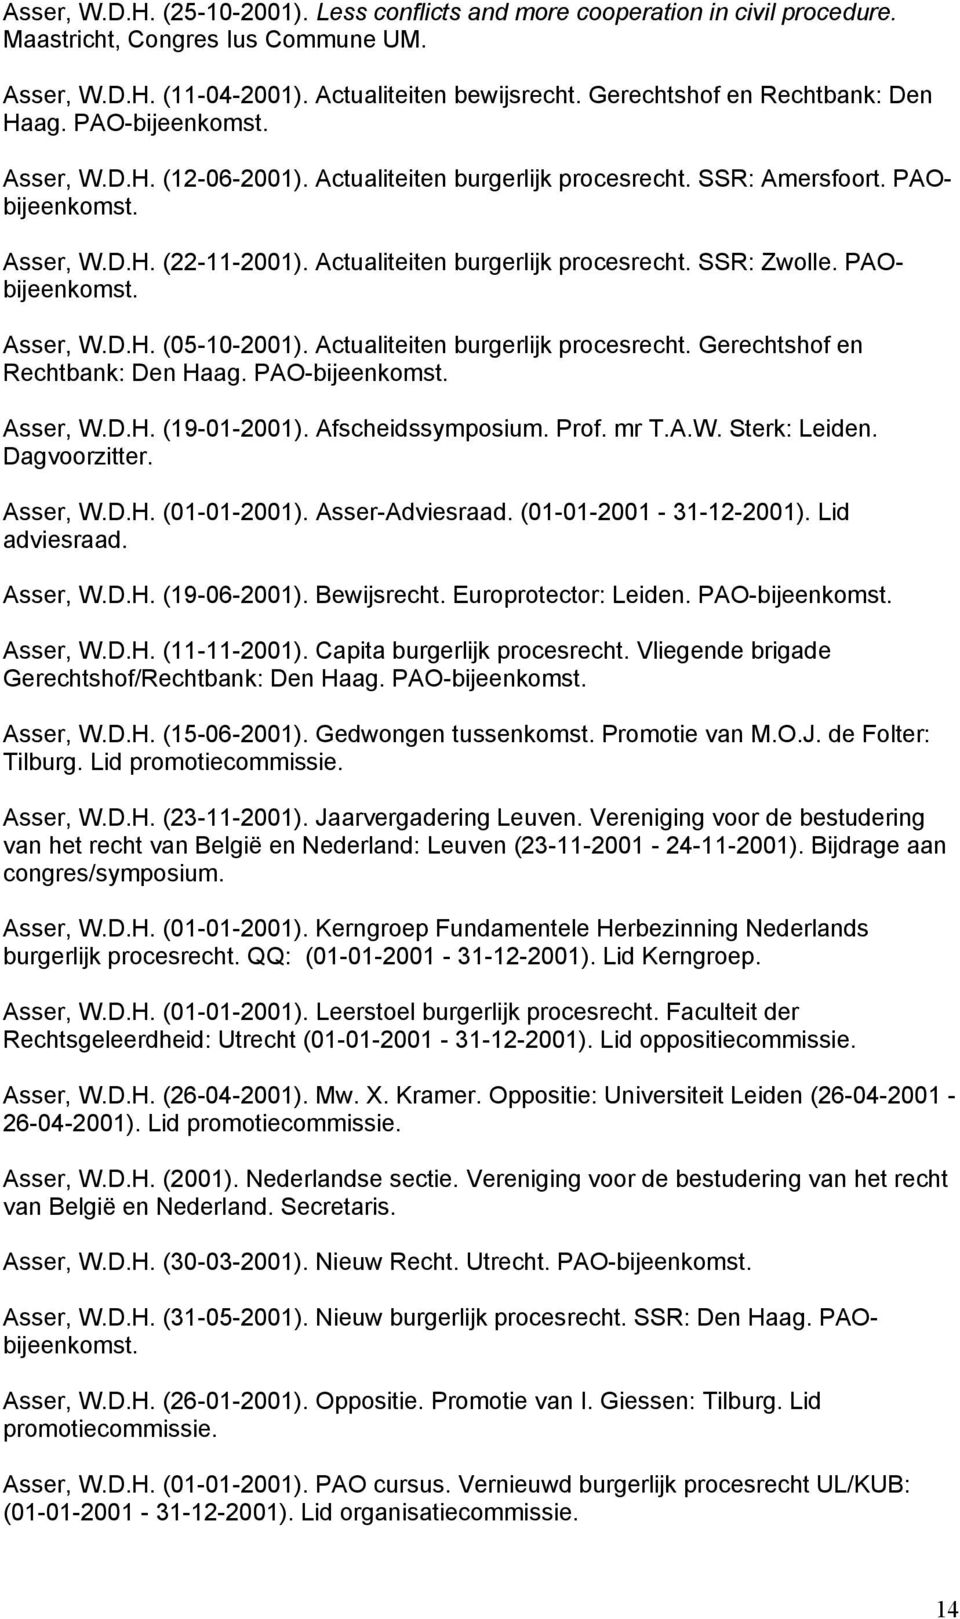 Actualiteiten burgerlijk procesrecht. SSR: Zwolle. PAObijeenkomst. Asser, W.D.H. (05-10-2001). Actualiteiten burgerlijk procesrecht. Gerechtshof en Rechtbank: Den Haag. PAO-bijeenkomst. Asser, W.D.H. (19-01-2001).